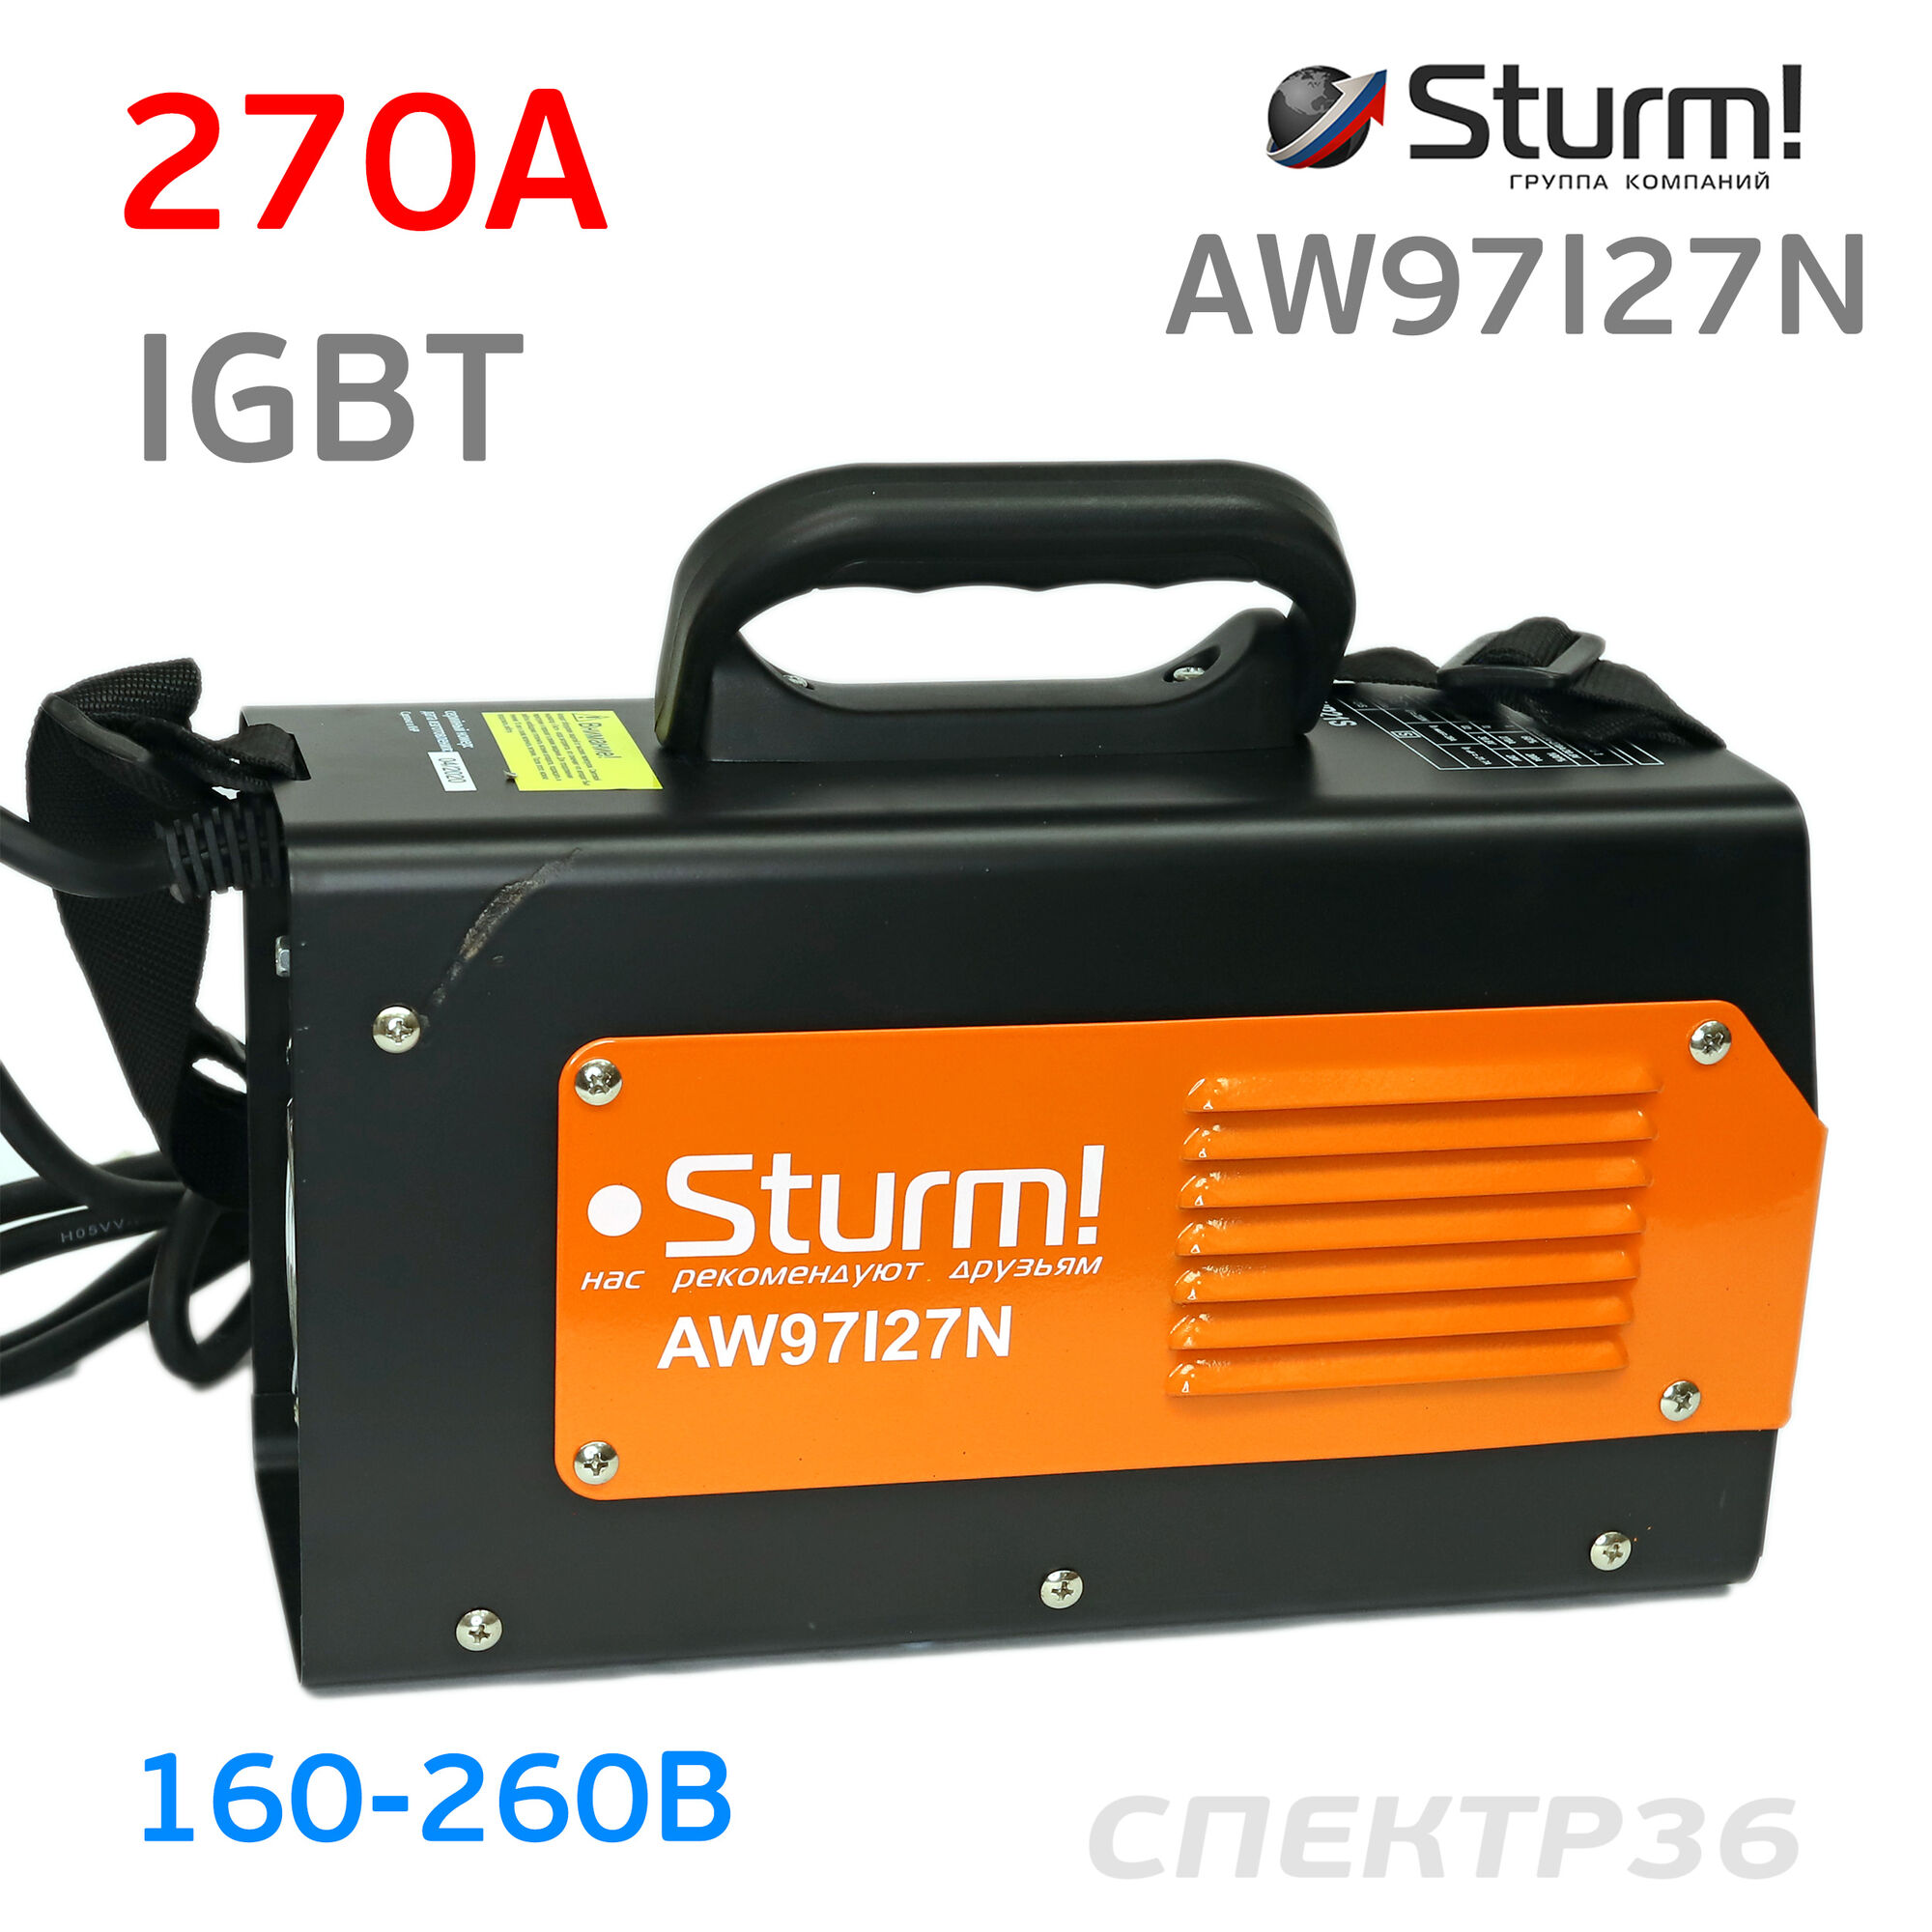 Инвертор Sturm AW97I27N (160-260В, 270 А) IGBT сварочный #5